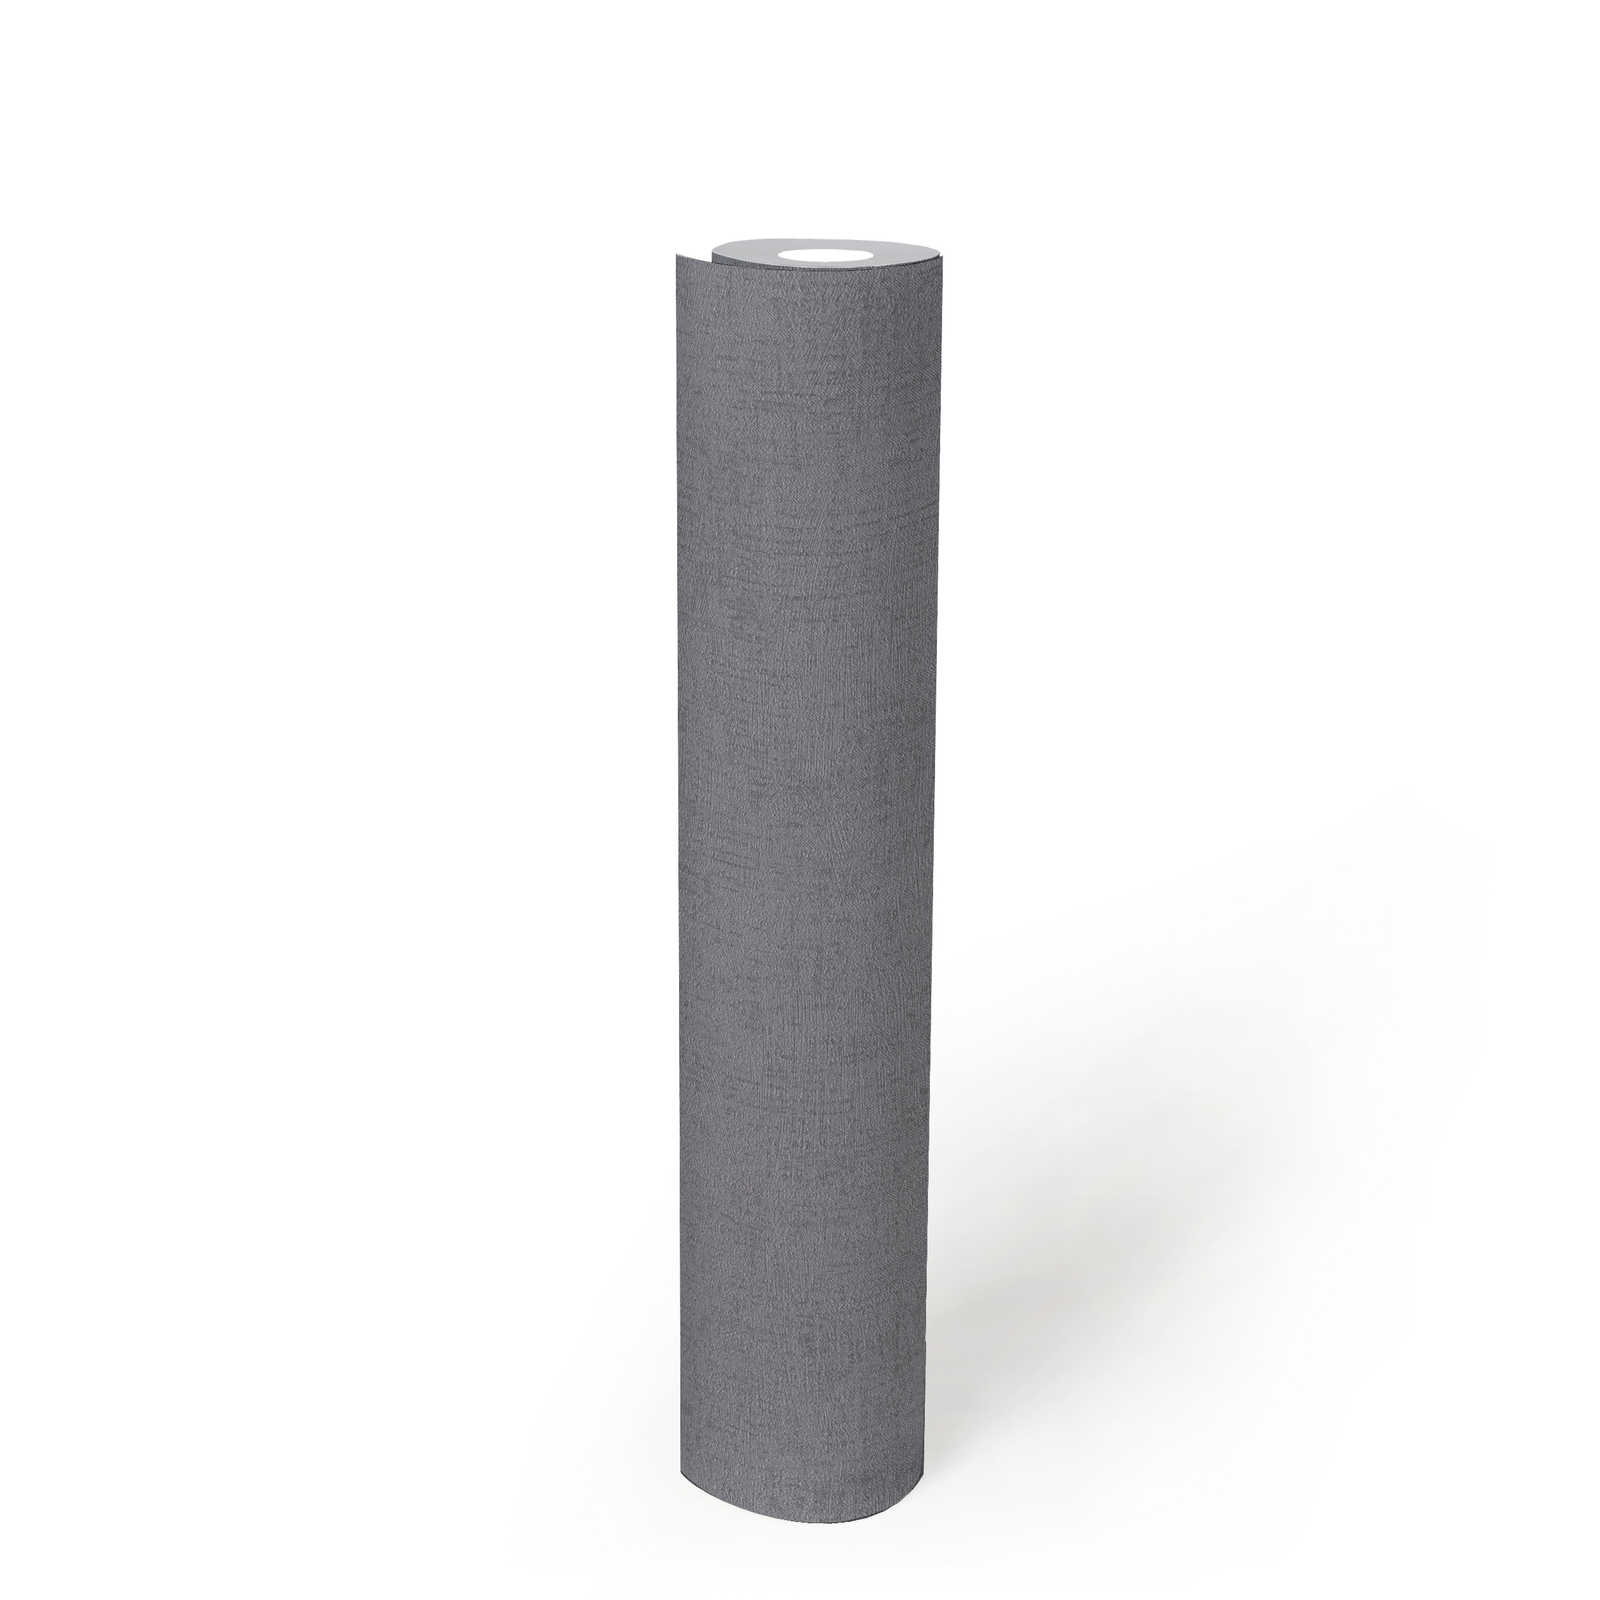             Glad behang staalgrijs met structuurdesign & glanseffect - grijs, metallic
        